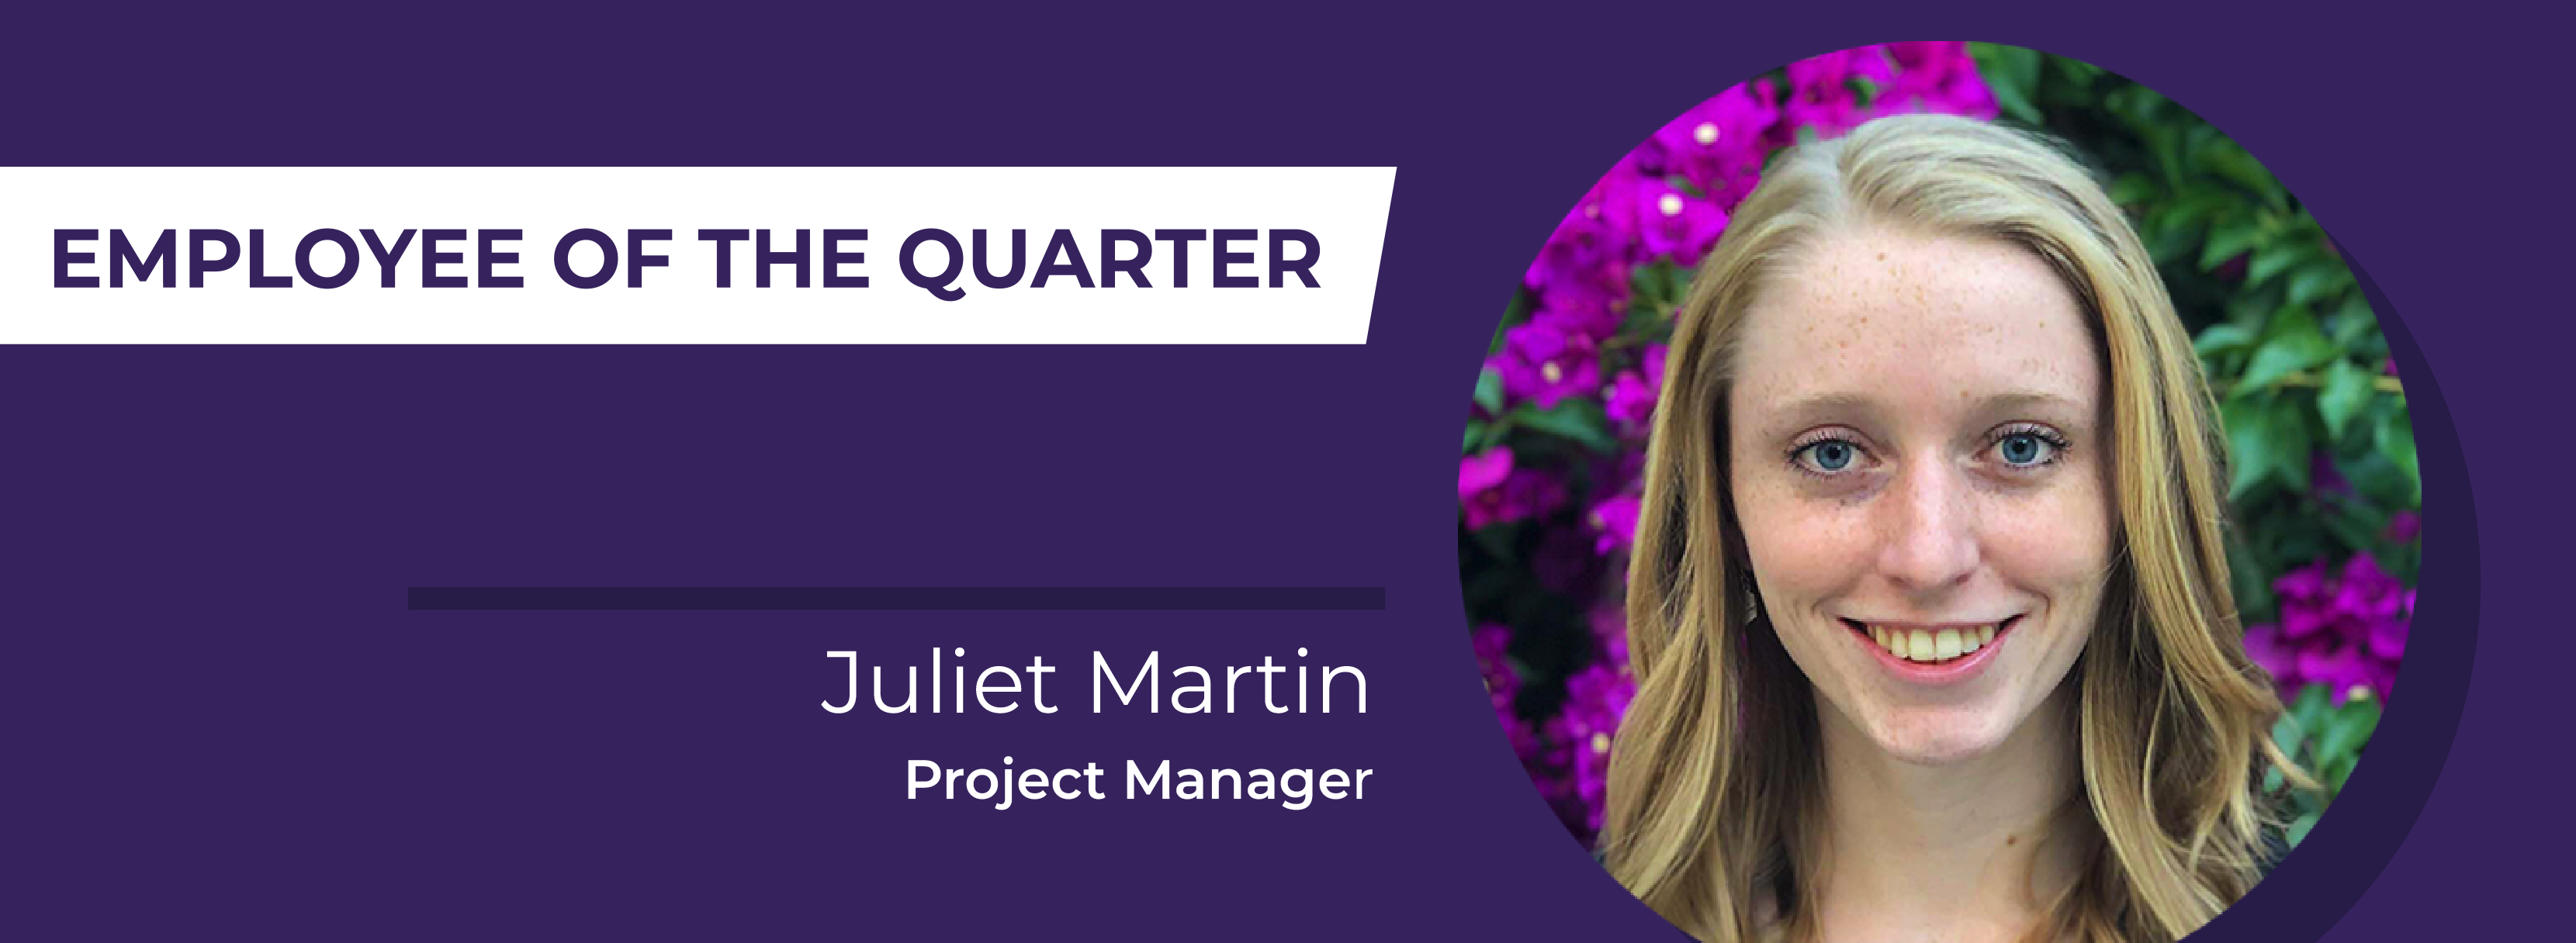 Juliet Martin, employee of the quarter